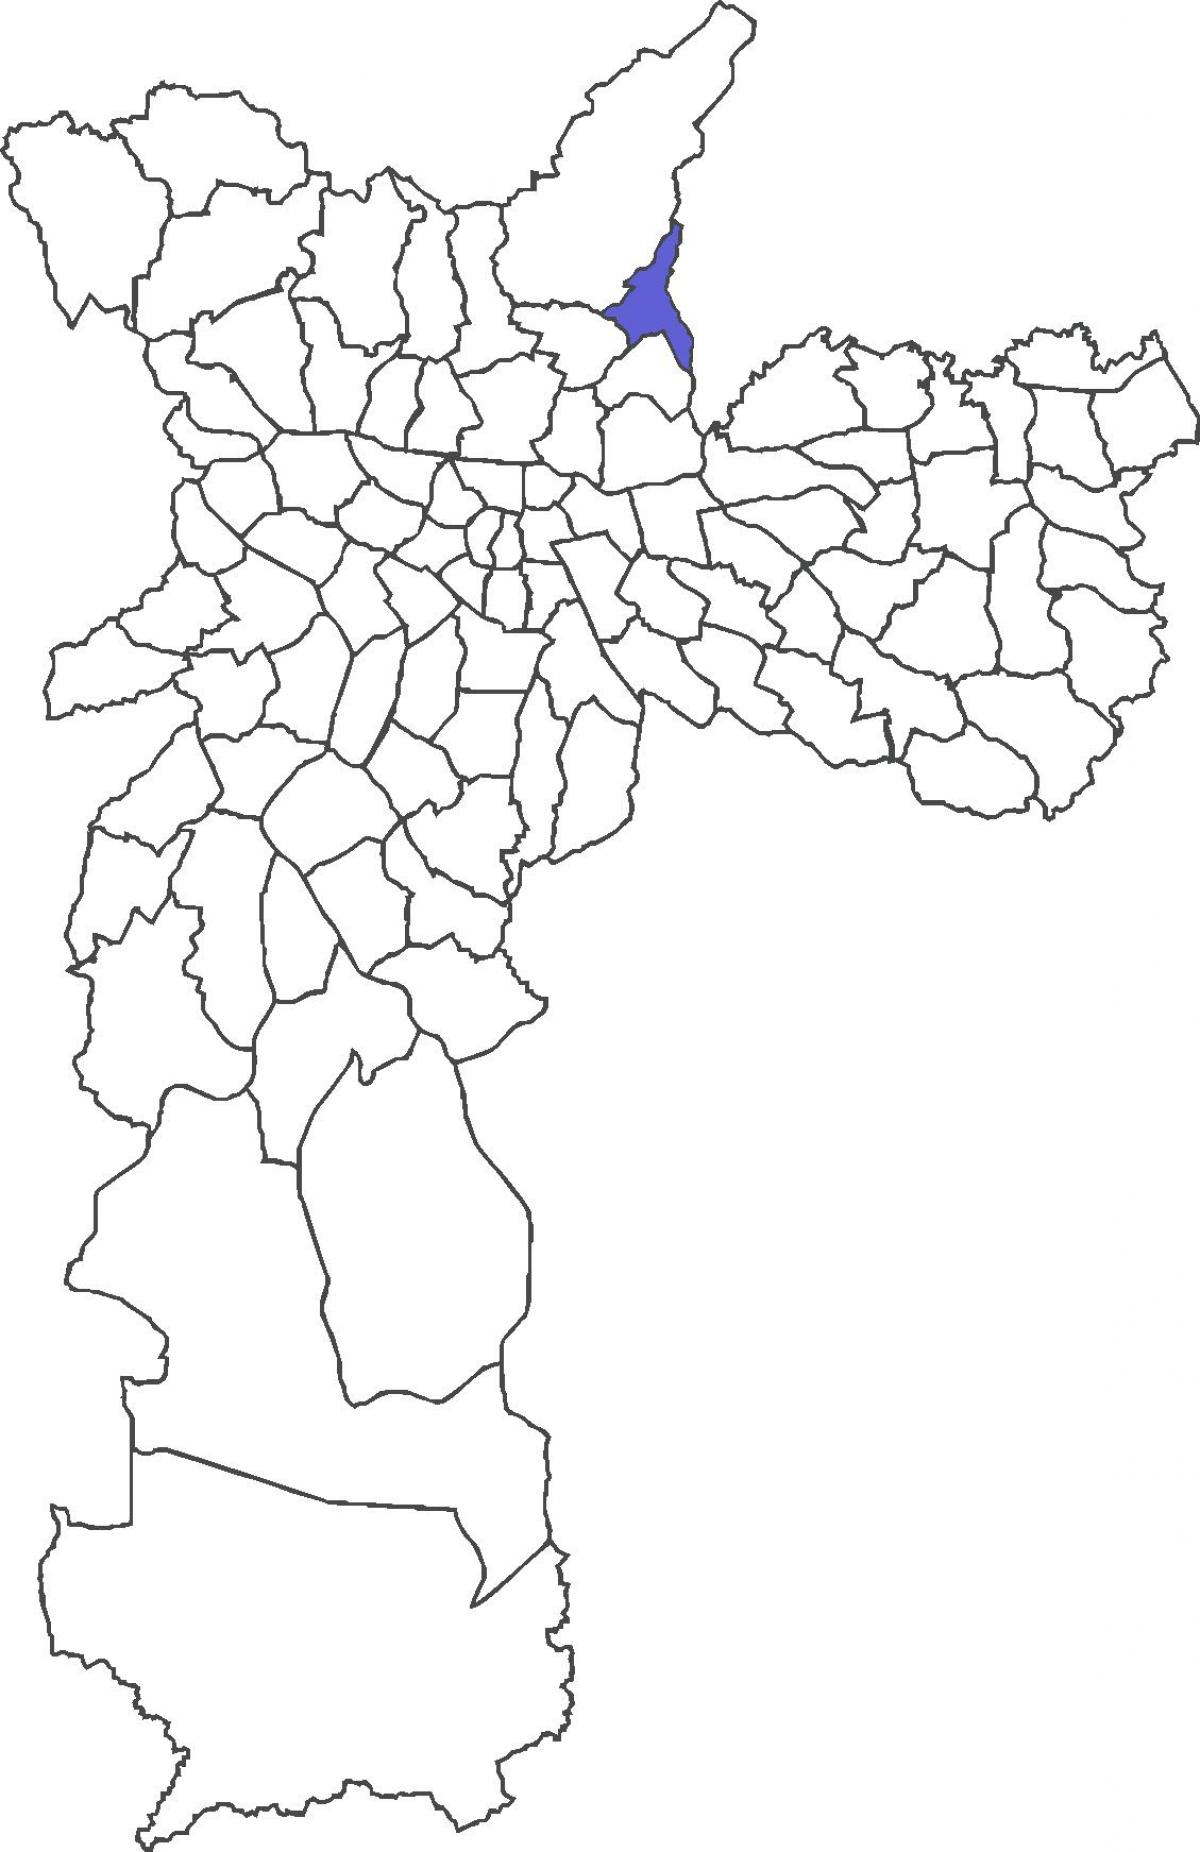 地图Jaçanã区